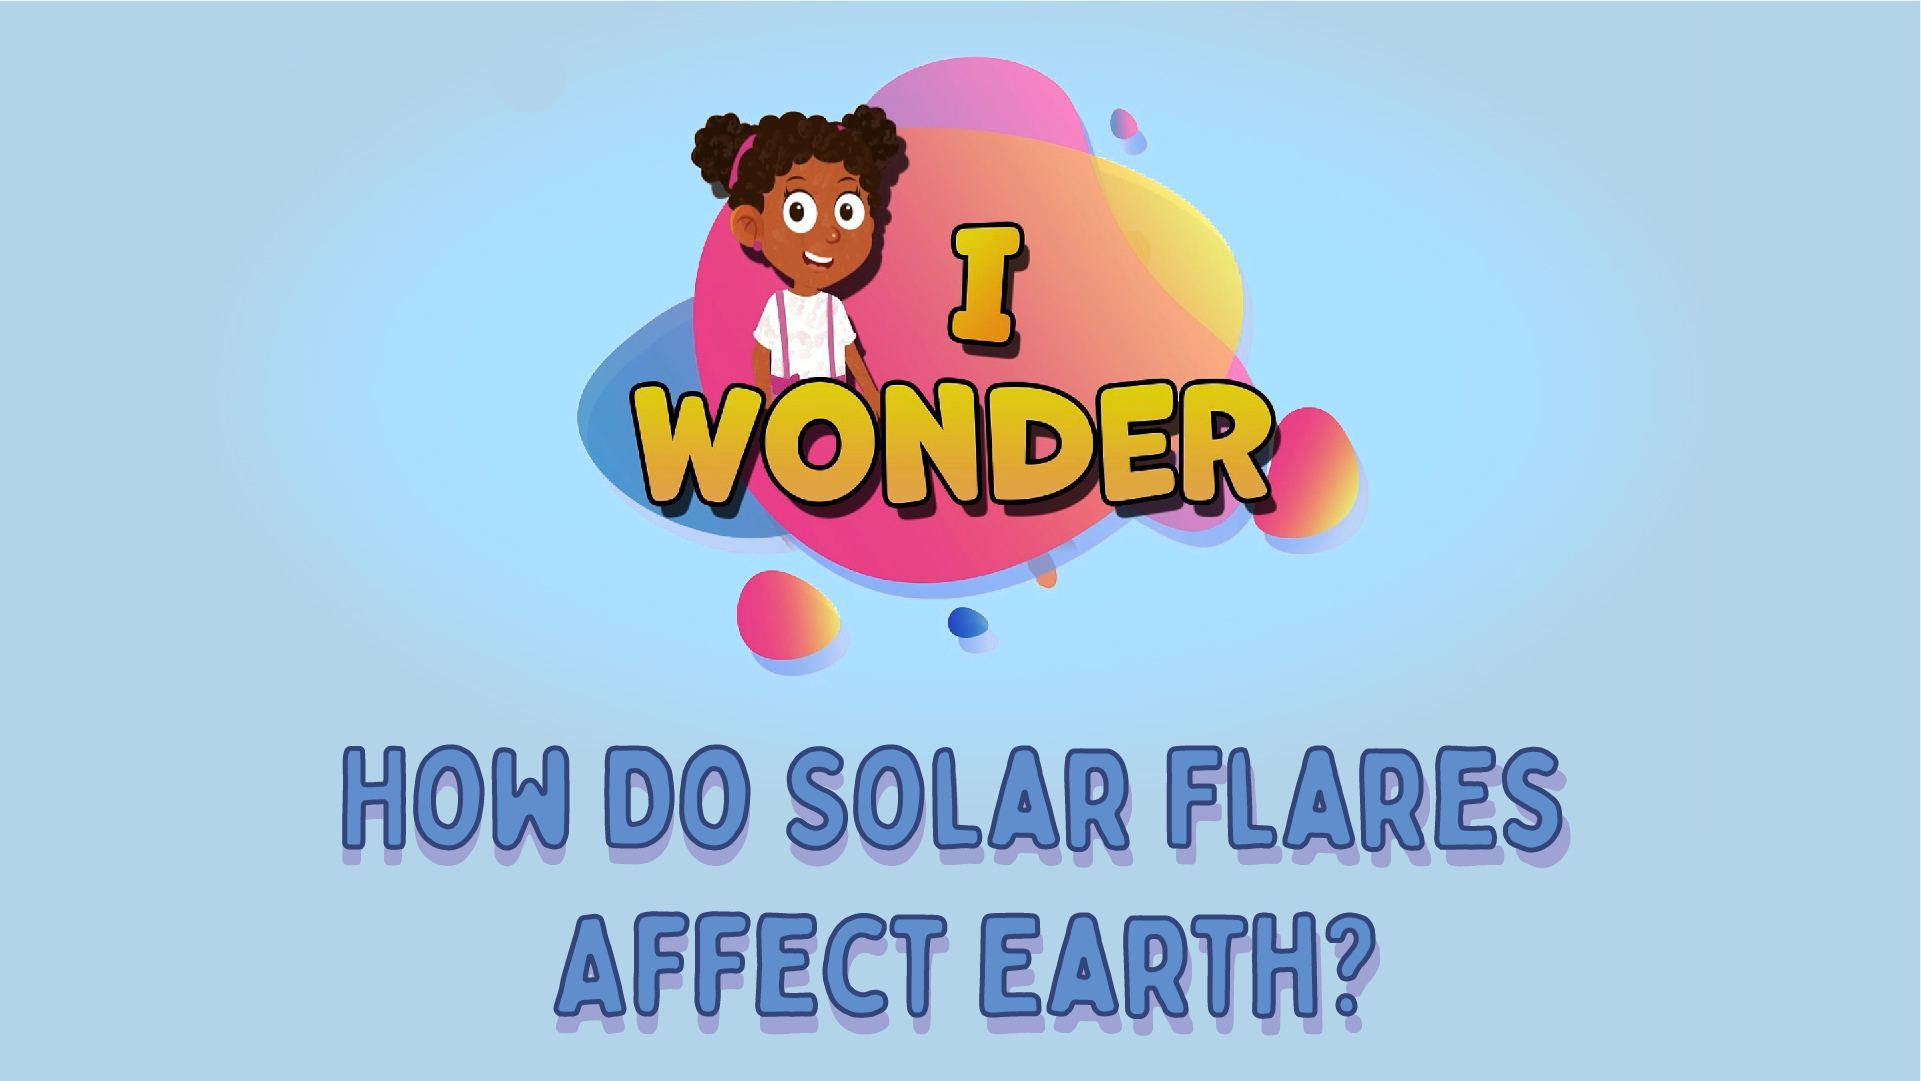 How Do Solar Flares Affect Earth?